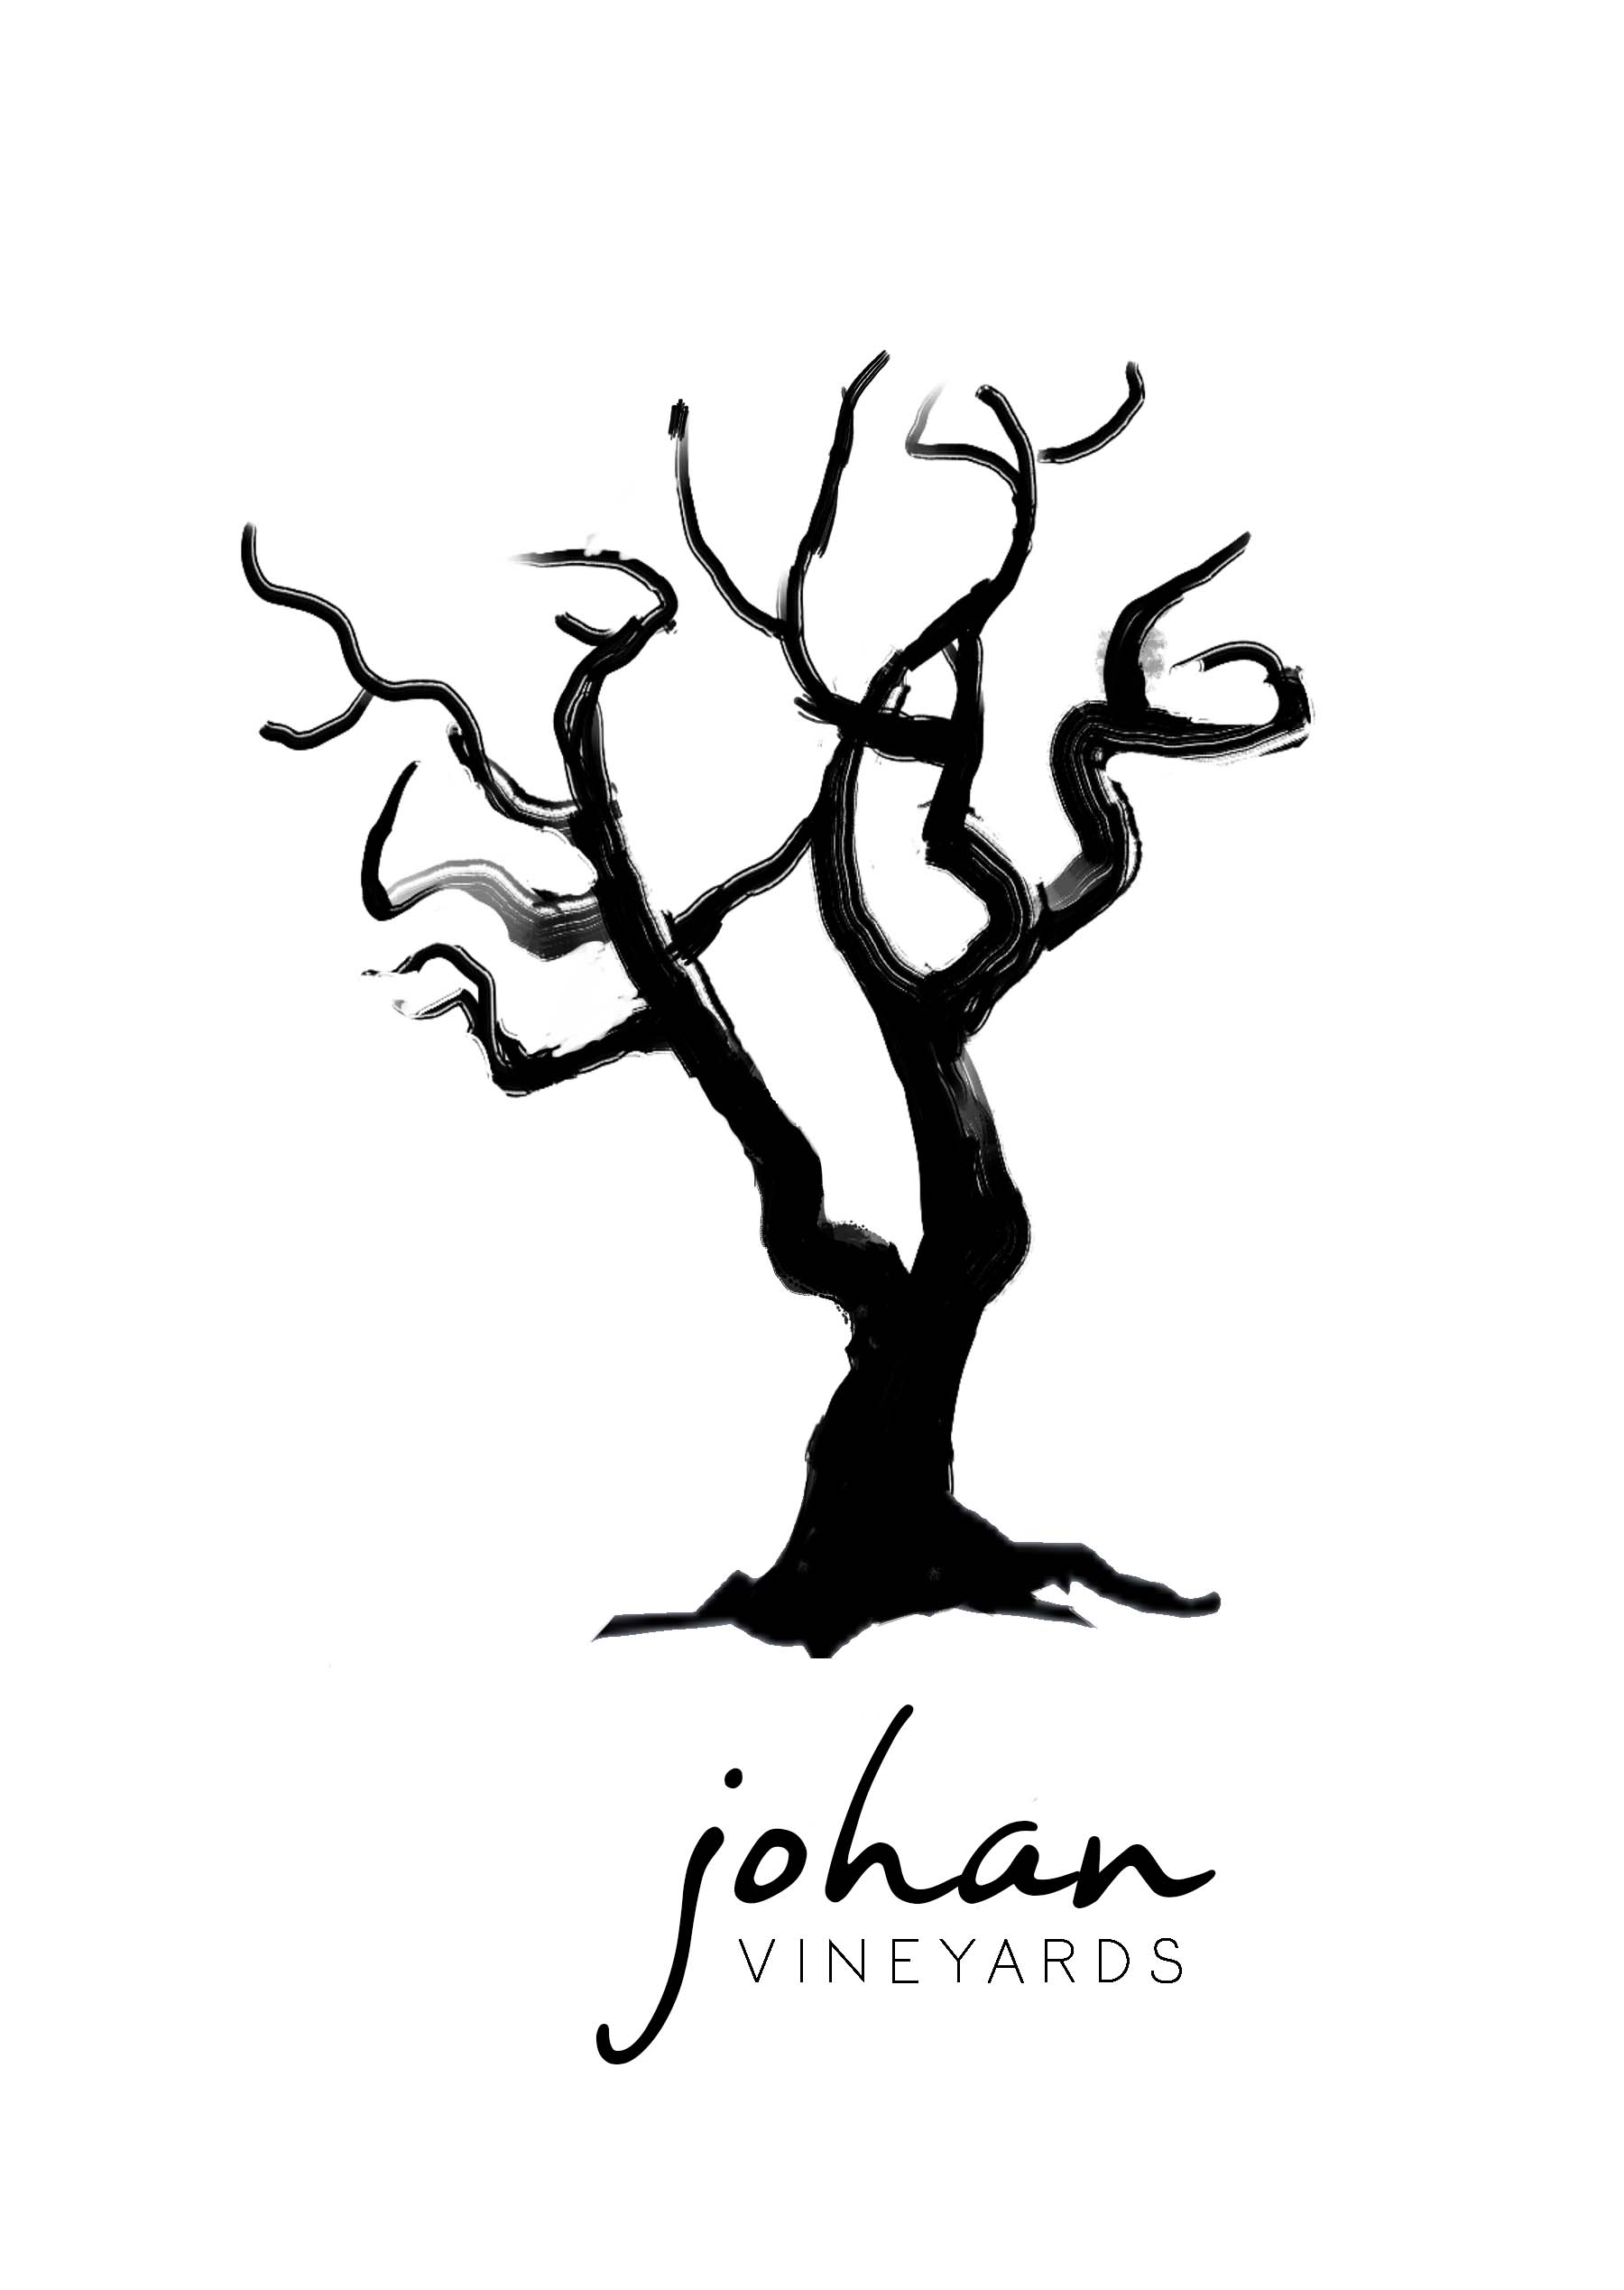 Johan logo with tree